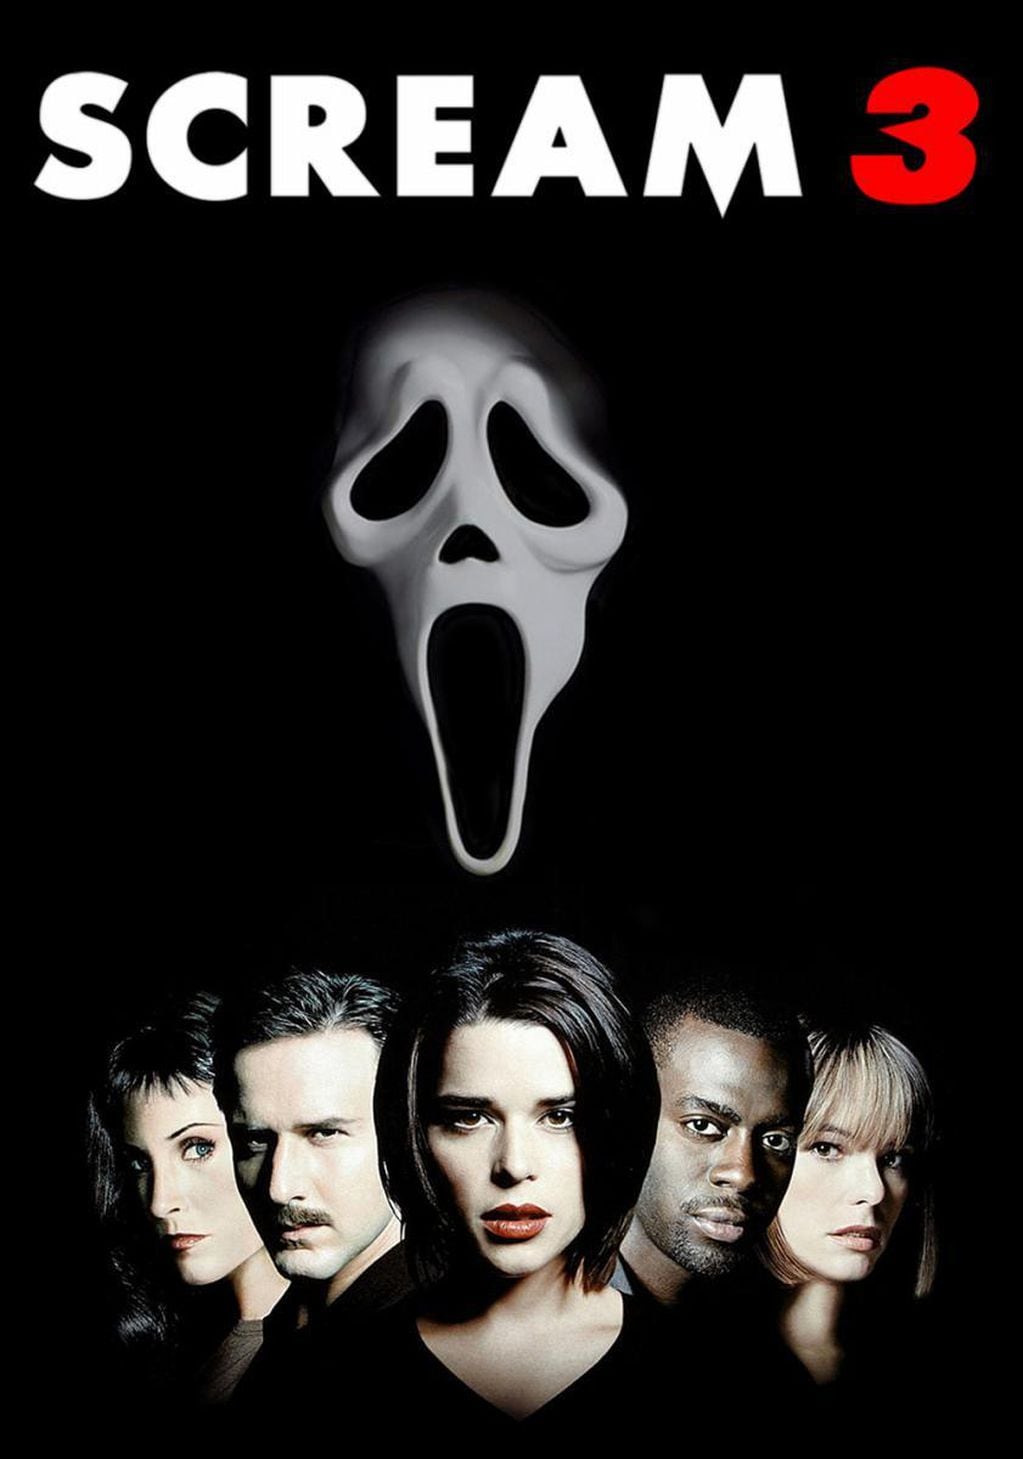 Scream 3, la más taquillera de la franquicia.